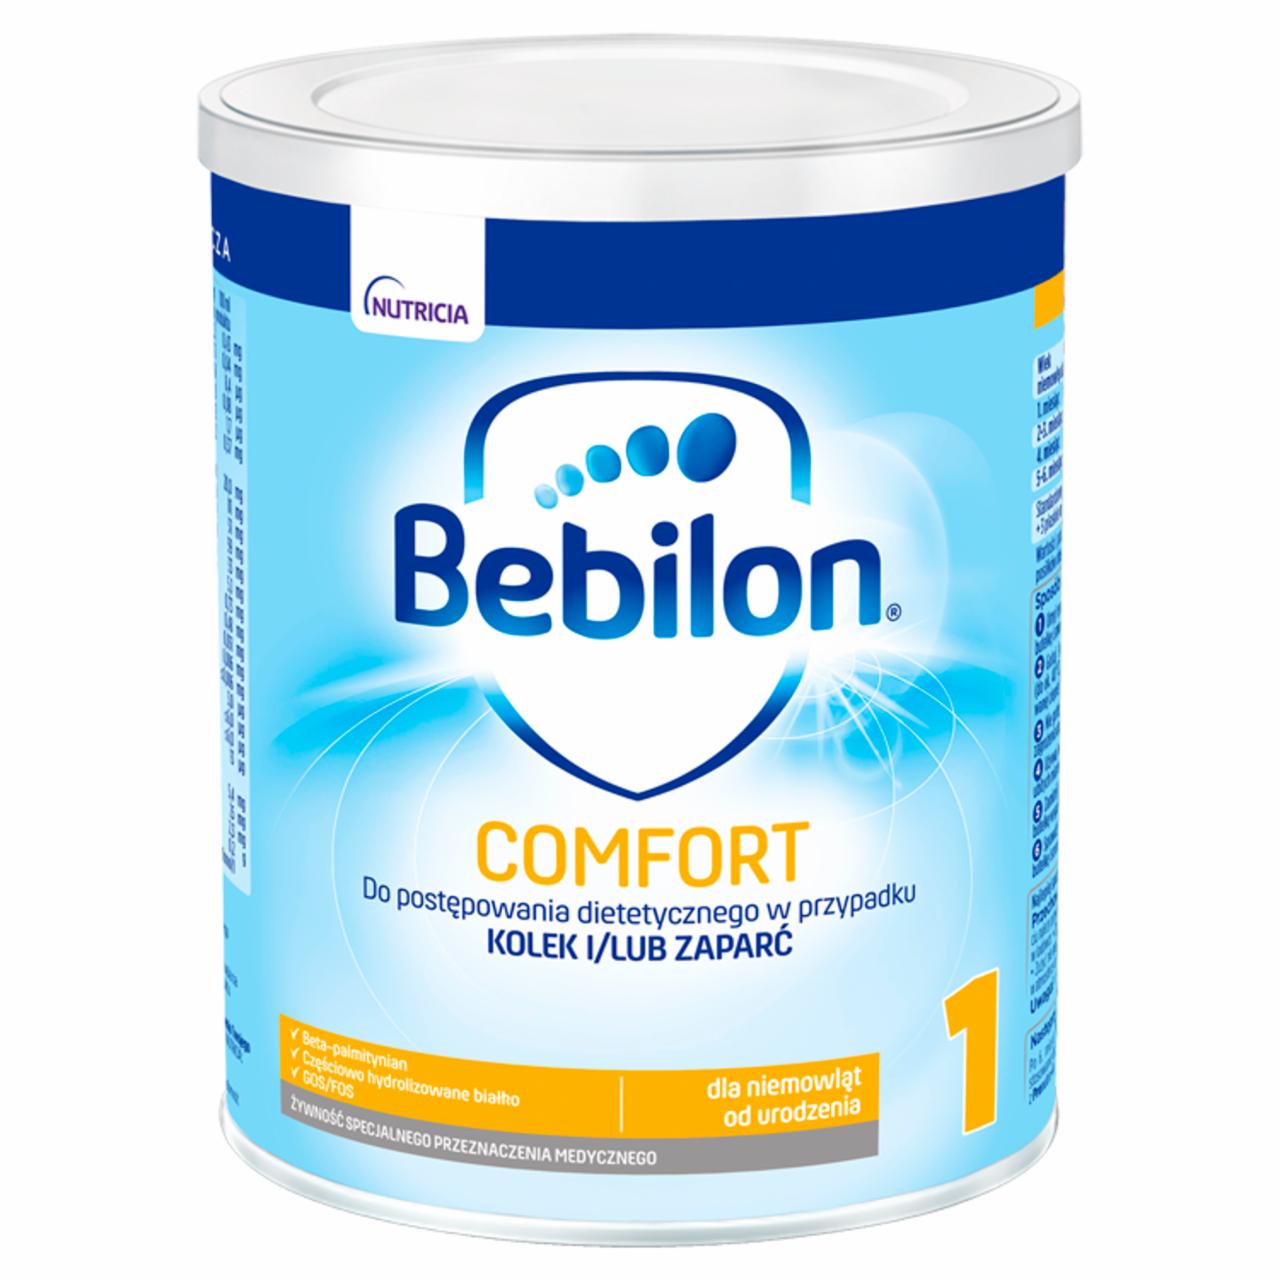 Zdjęcia - Bebilon Comfort 1 Żywność specjalnego przeznaczenia medycznego dla niemowląt od urodzenia 400 g